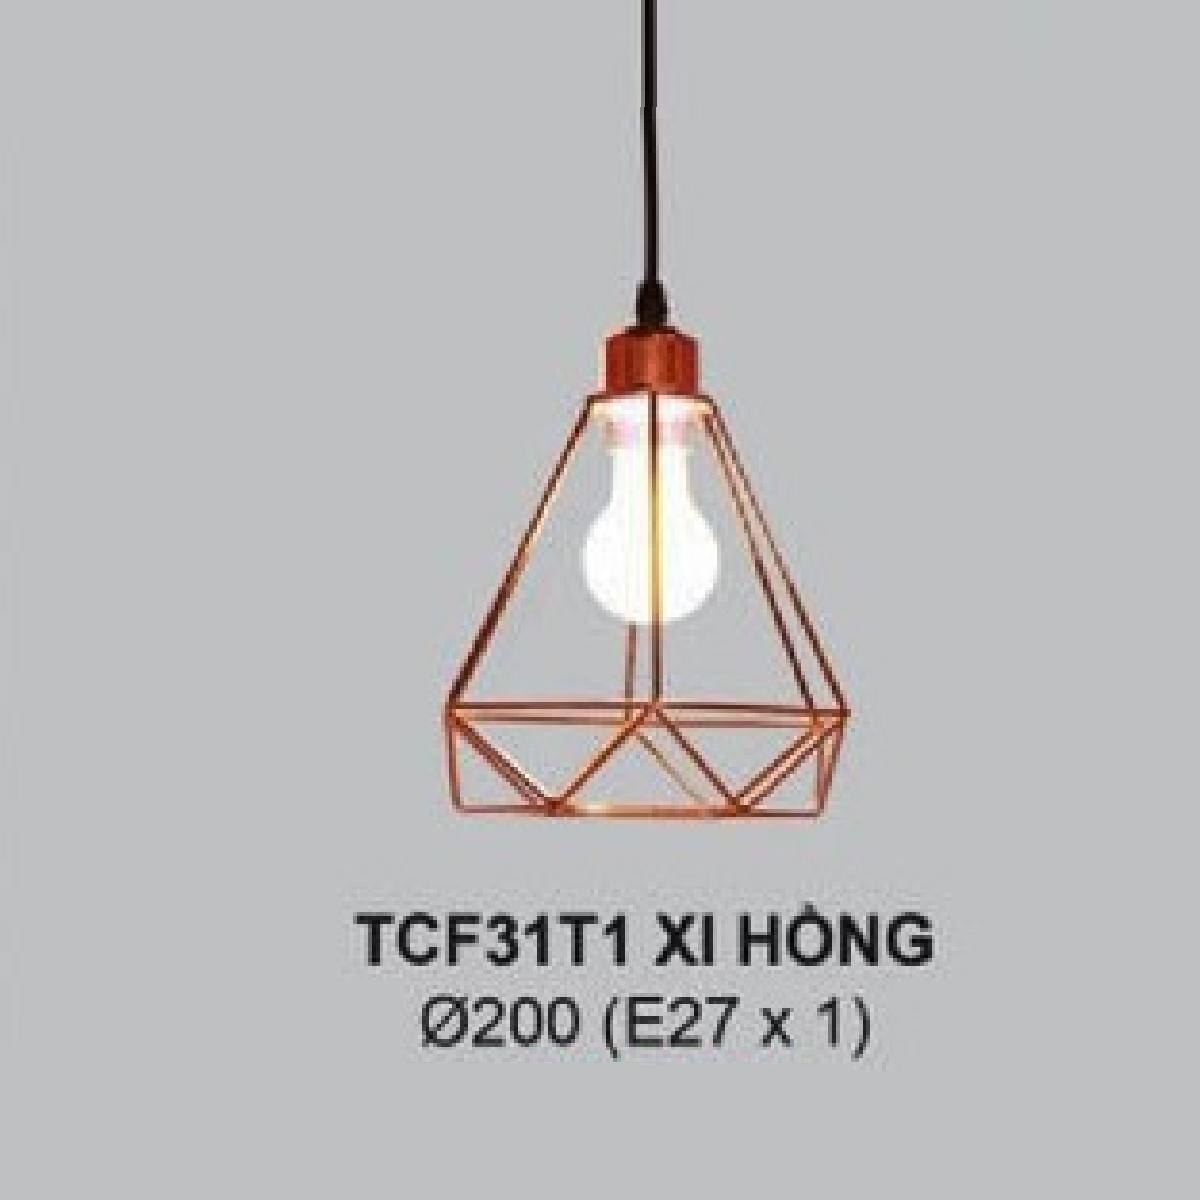 35 - TCF31T1 Xi Hồng: Đèn thả đơn chao xi hồng - KT: Ø200mm - Bóng đèn E27 x 1 bóng